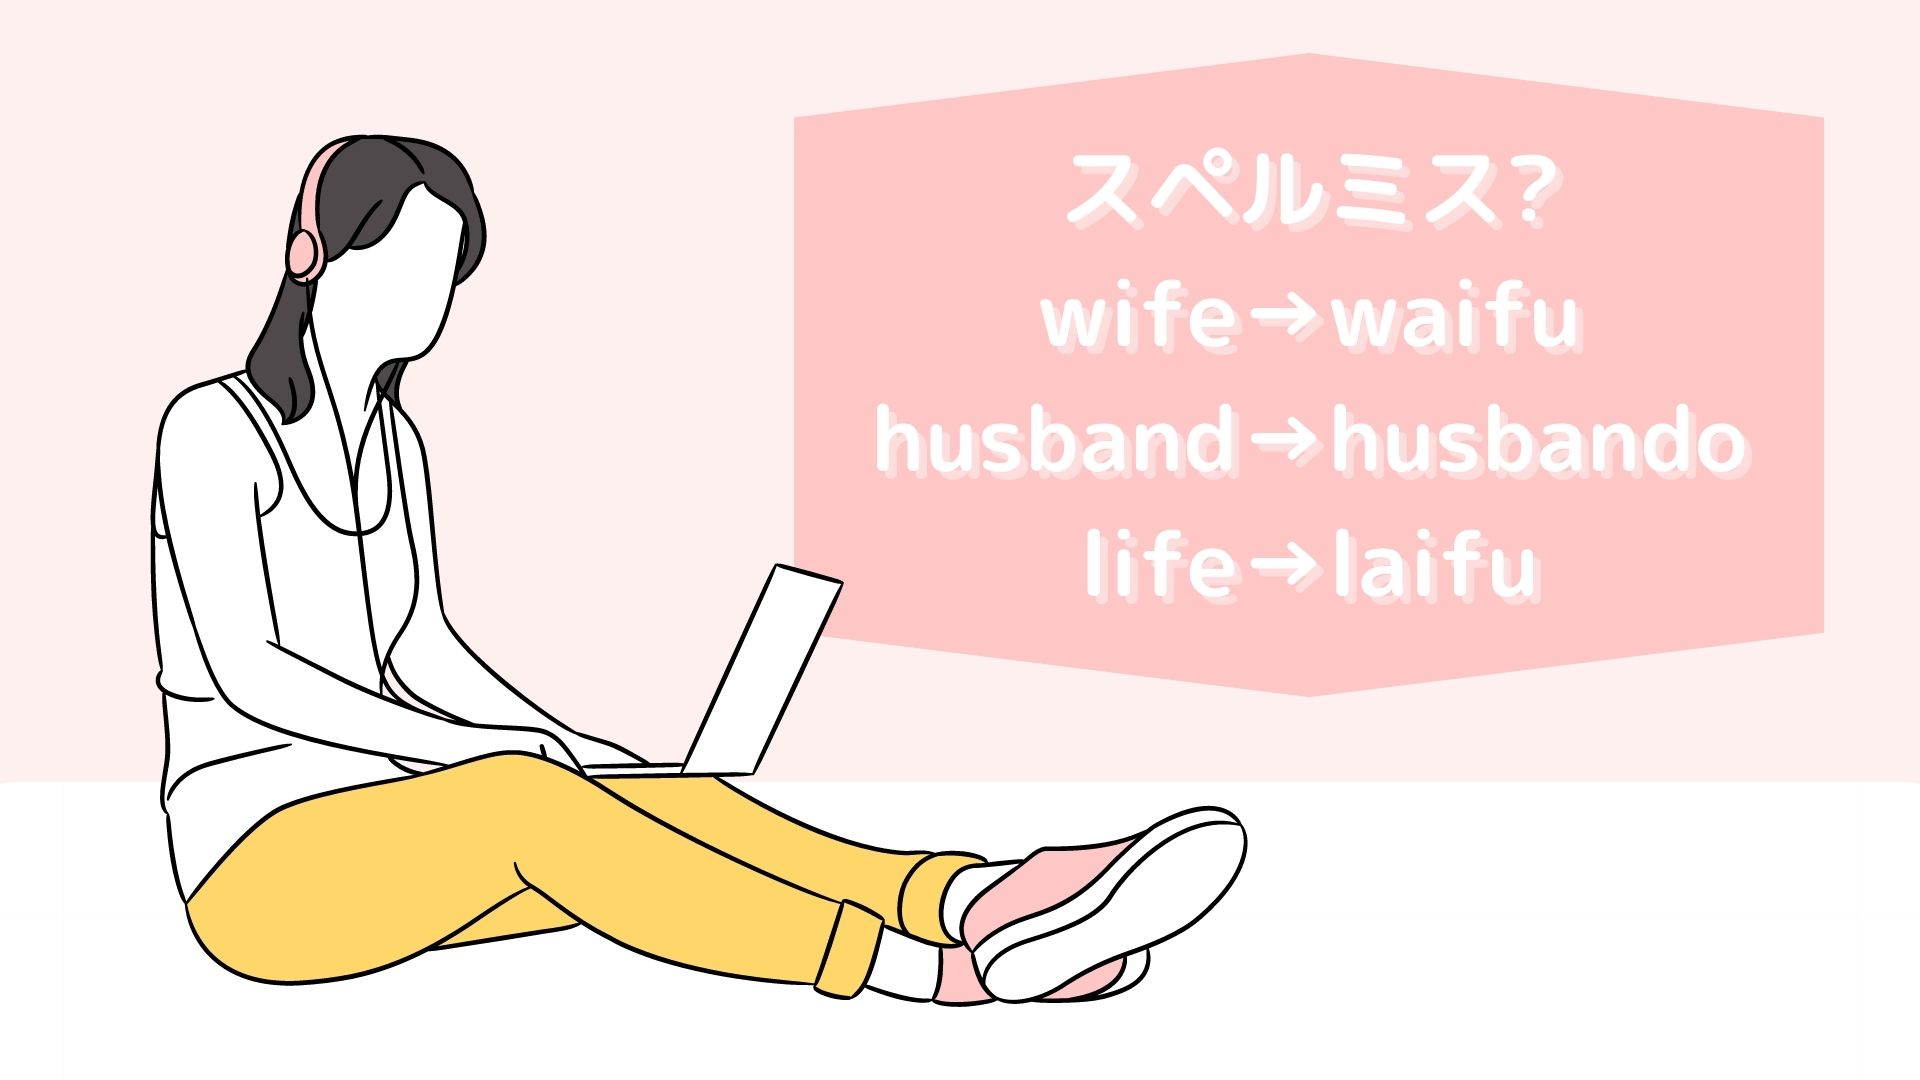 wifeをwaifu,husbandをhusbando,lifeをlaifu、意味、イメージ、アイキャッチ画像、女性がパソコンで音楽を聴いている、ピンク基調